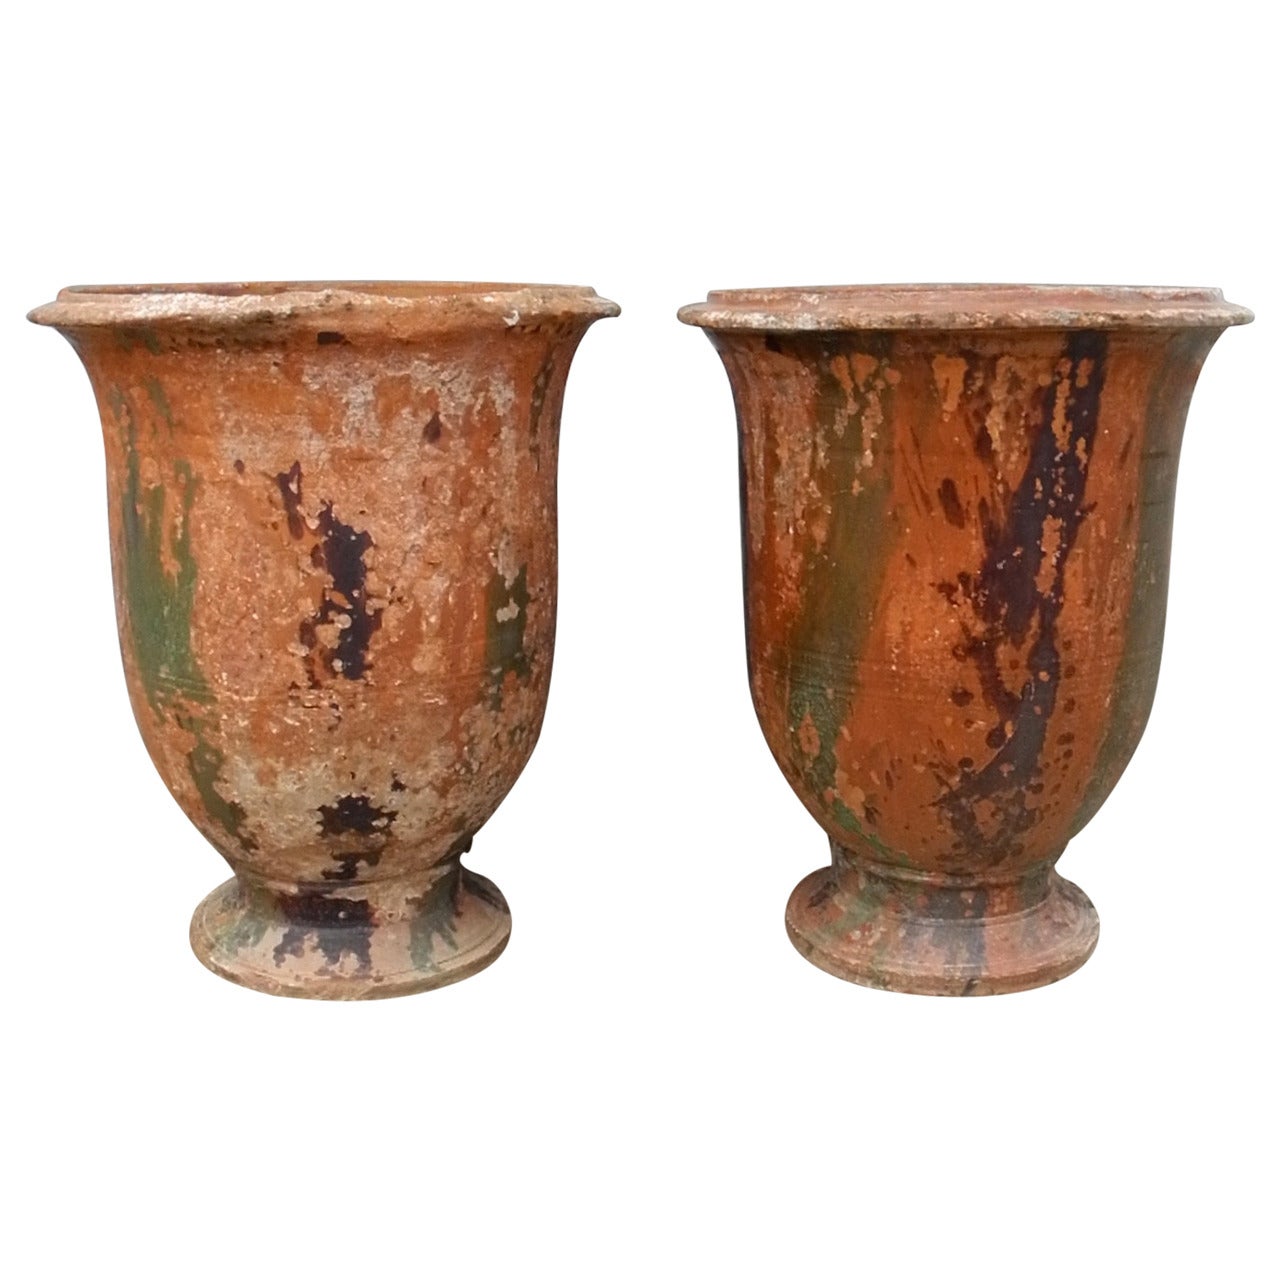 Pair of Antique 19th Century "Jarres d'Anduze" Urns